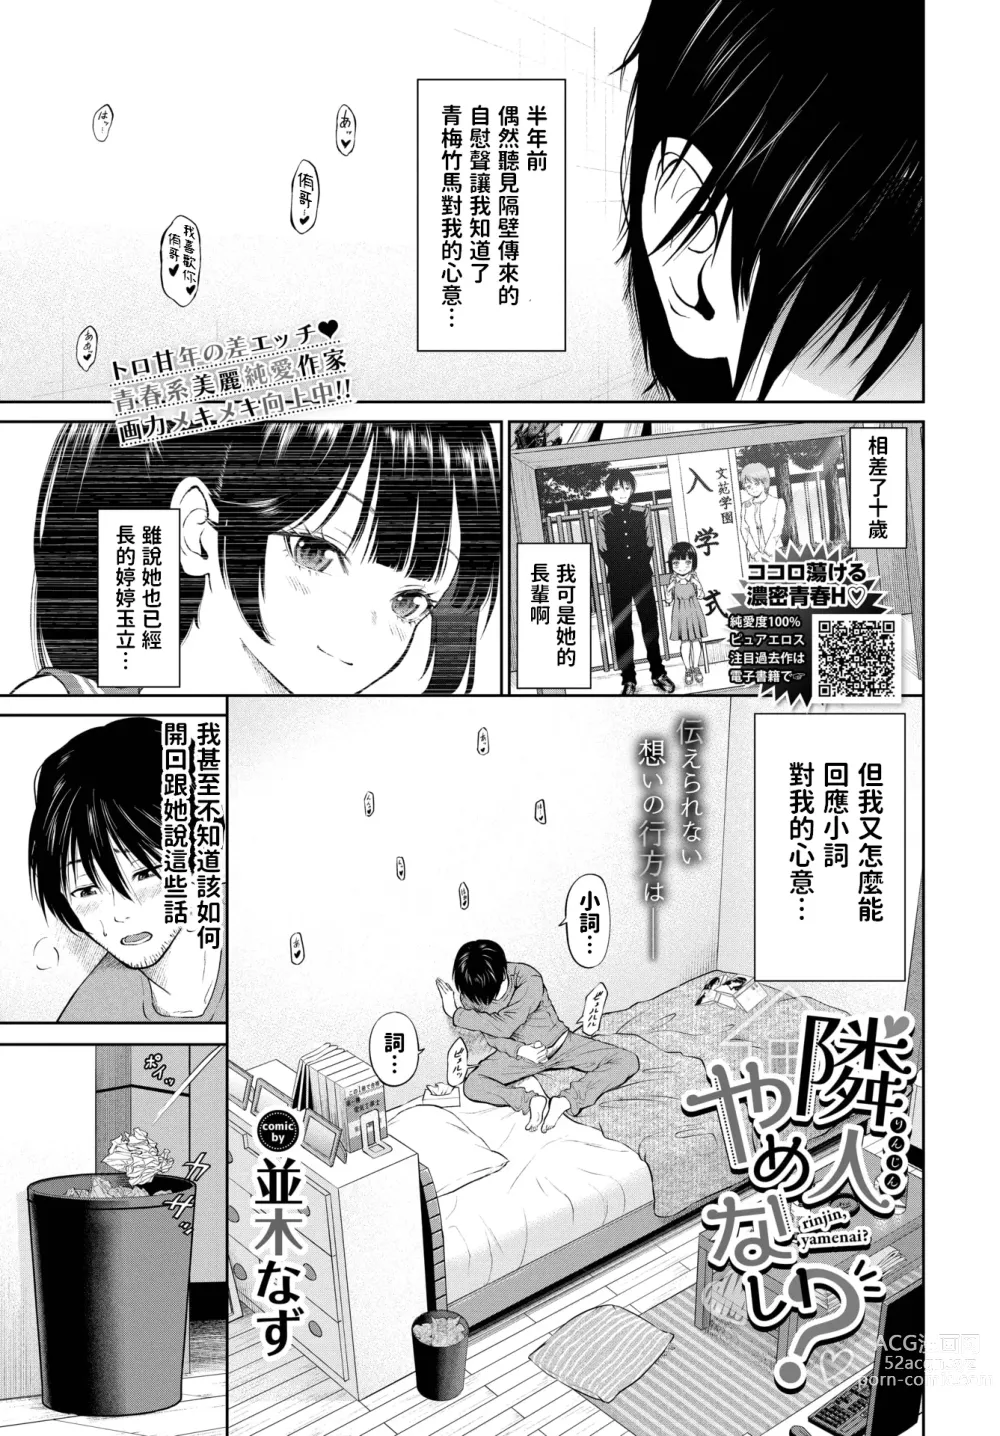 Page 1 of manga Rinjin Yamenai?